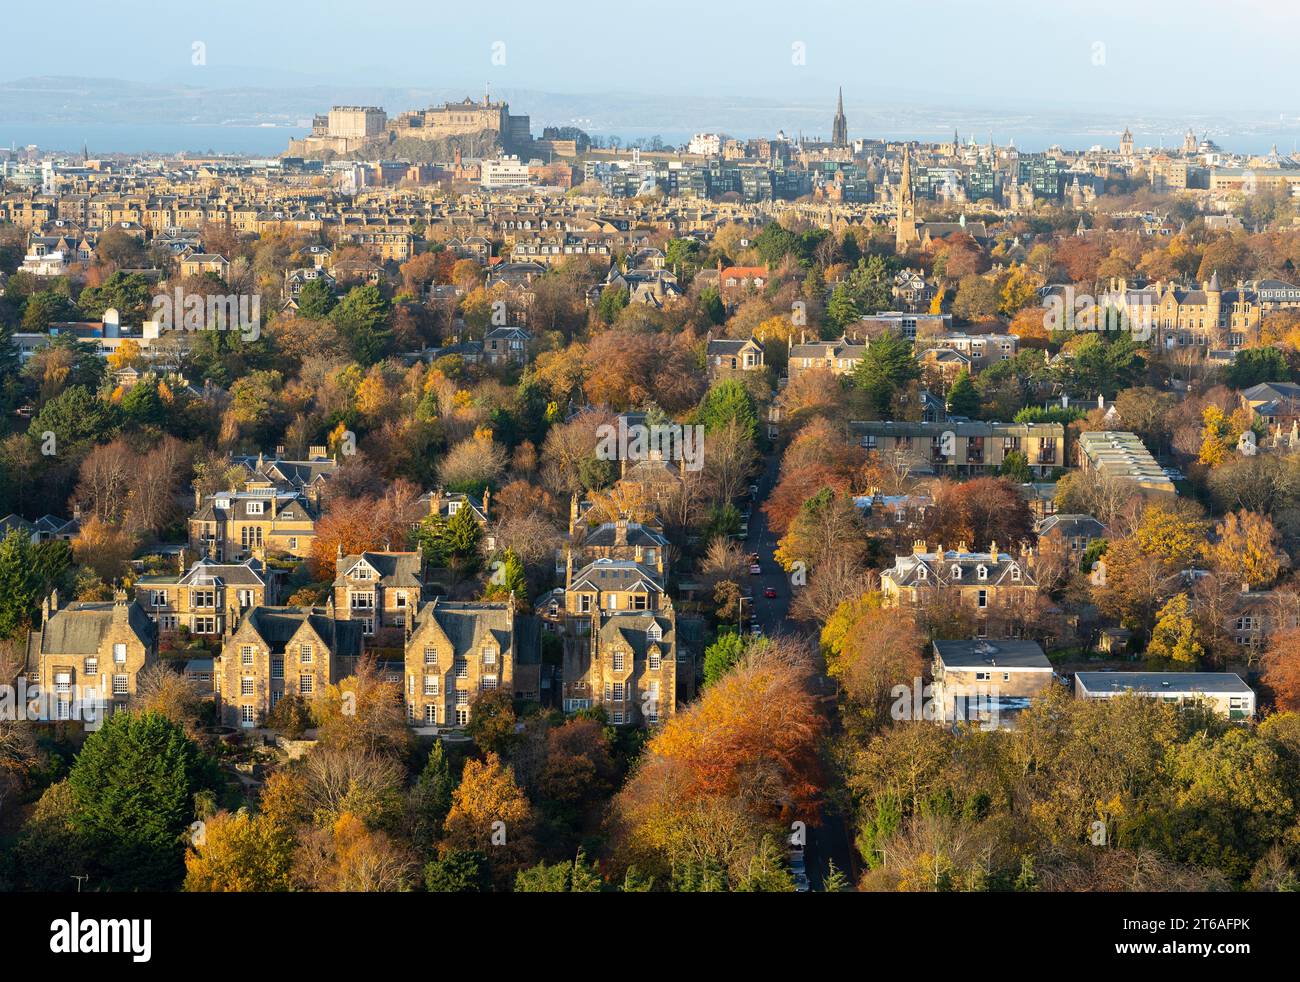 Blick auf den Vorort Grange mit vielen großen, teuren Einfamilienhäusern in Richtung Stadtzentrum von Edinburgh vom Blackford Hill im Herbst, Edinburgh, Scotl Stockfoto